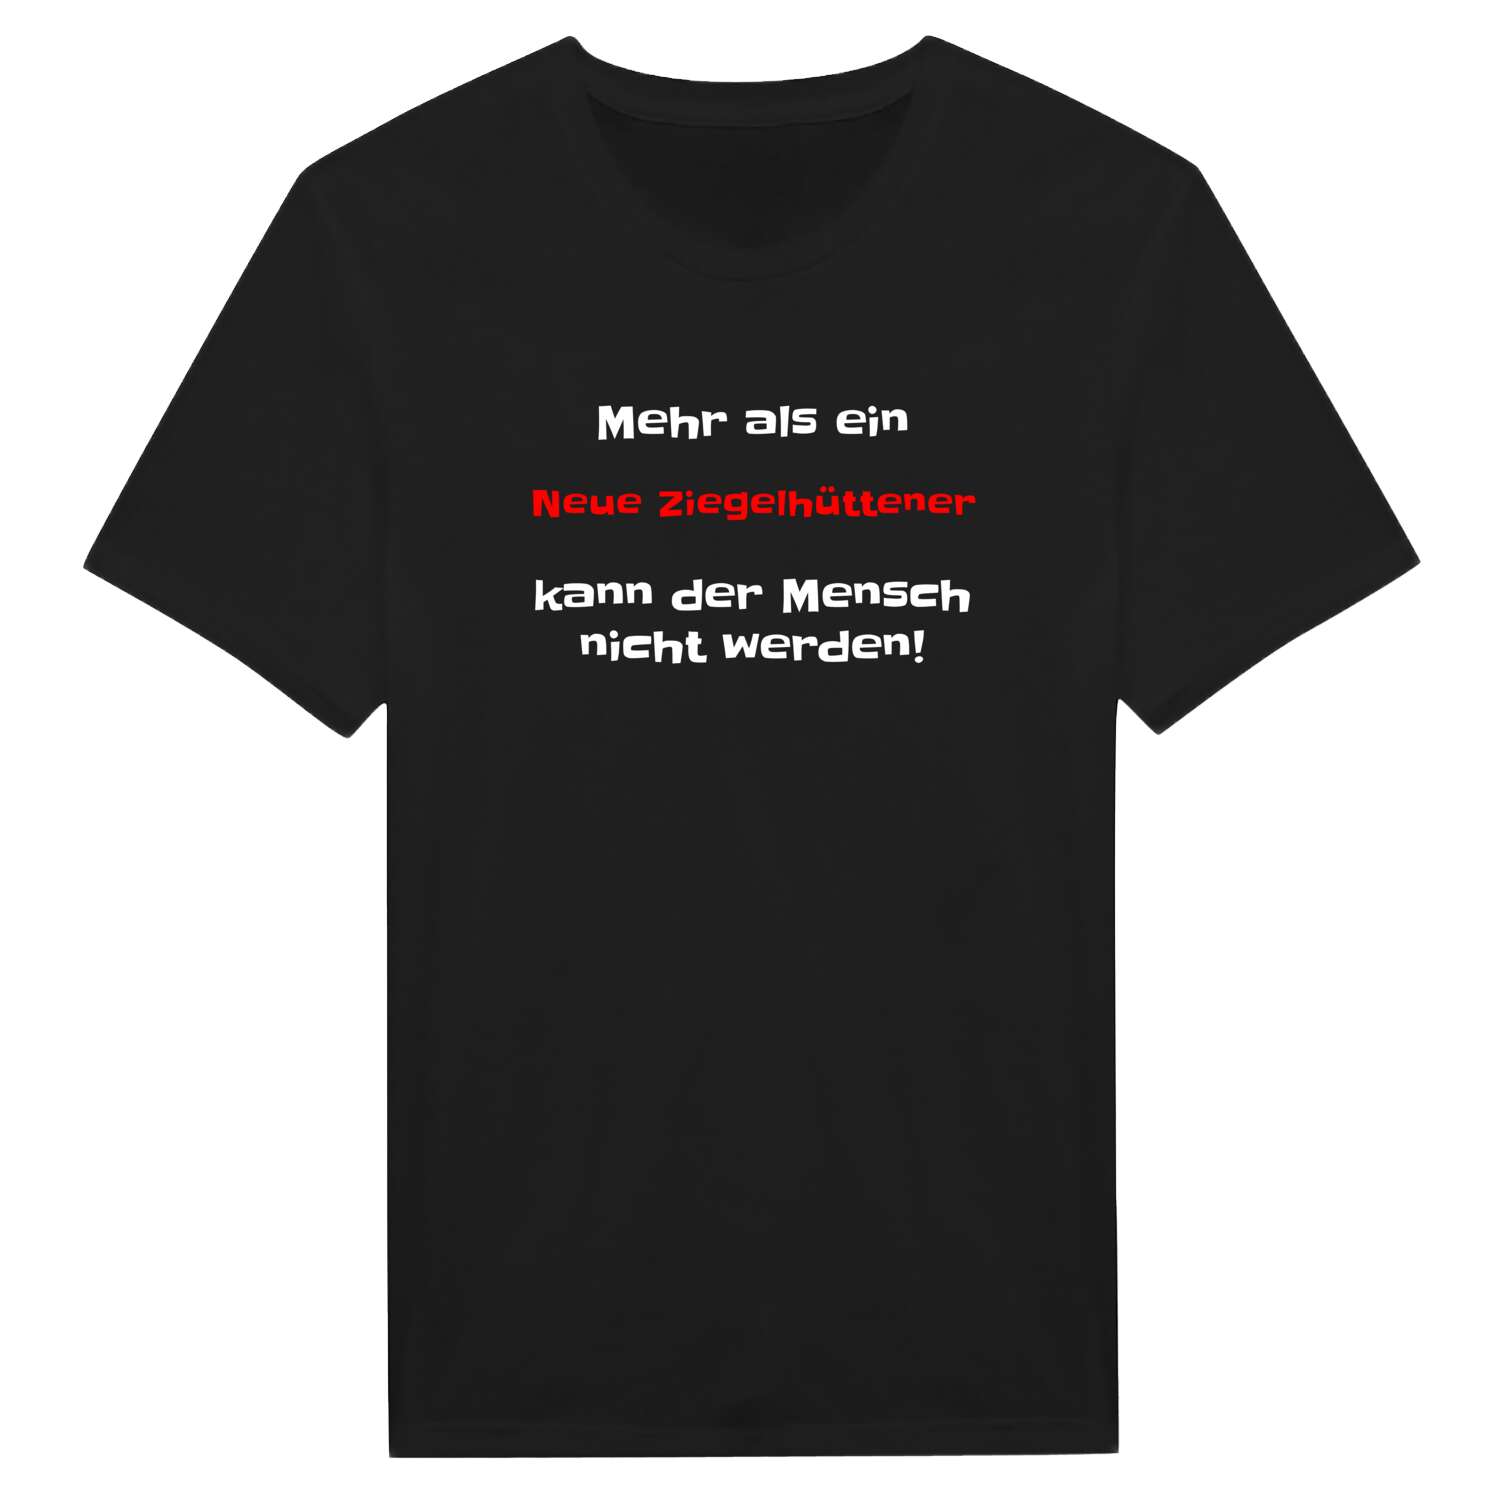 Neue Ziegelhütte T-Shirt »Mehr als ein«